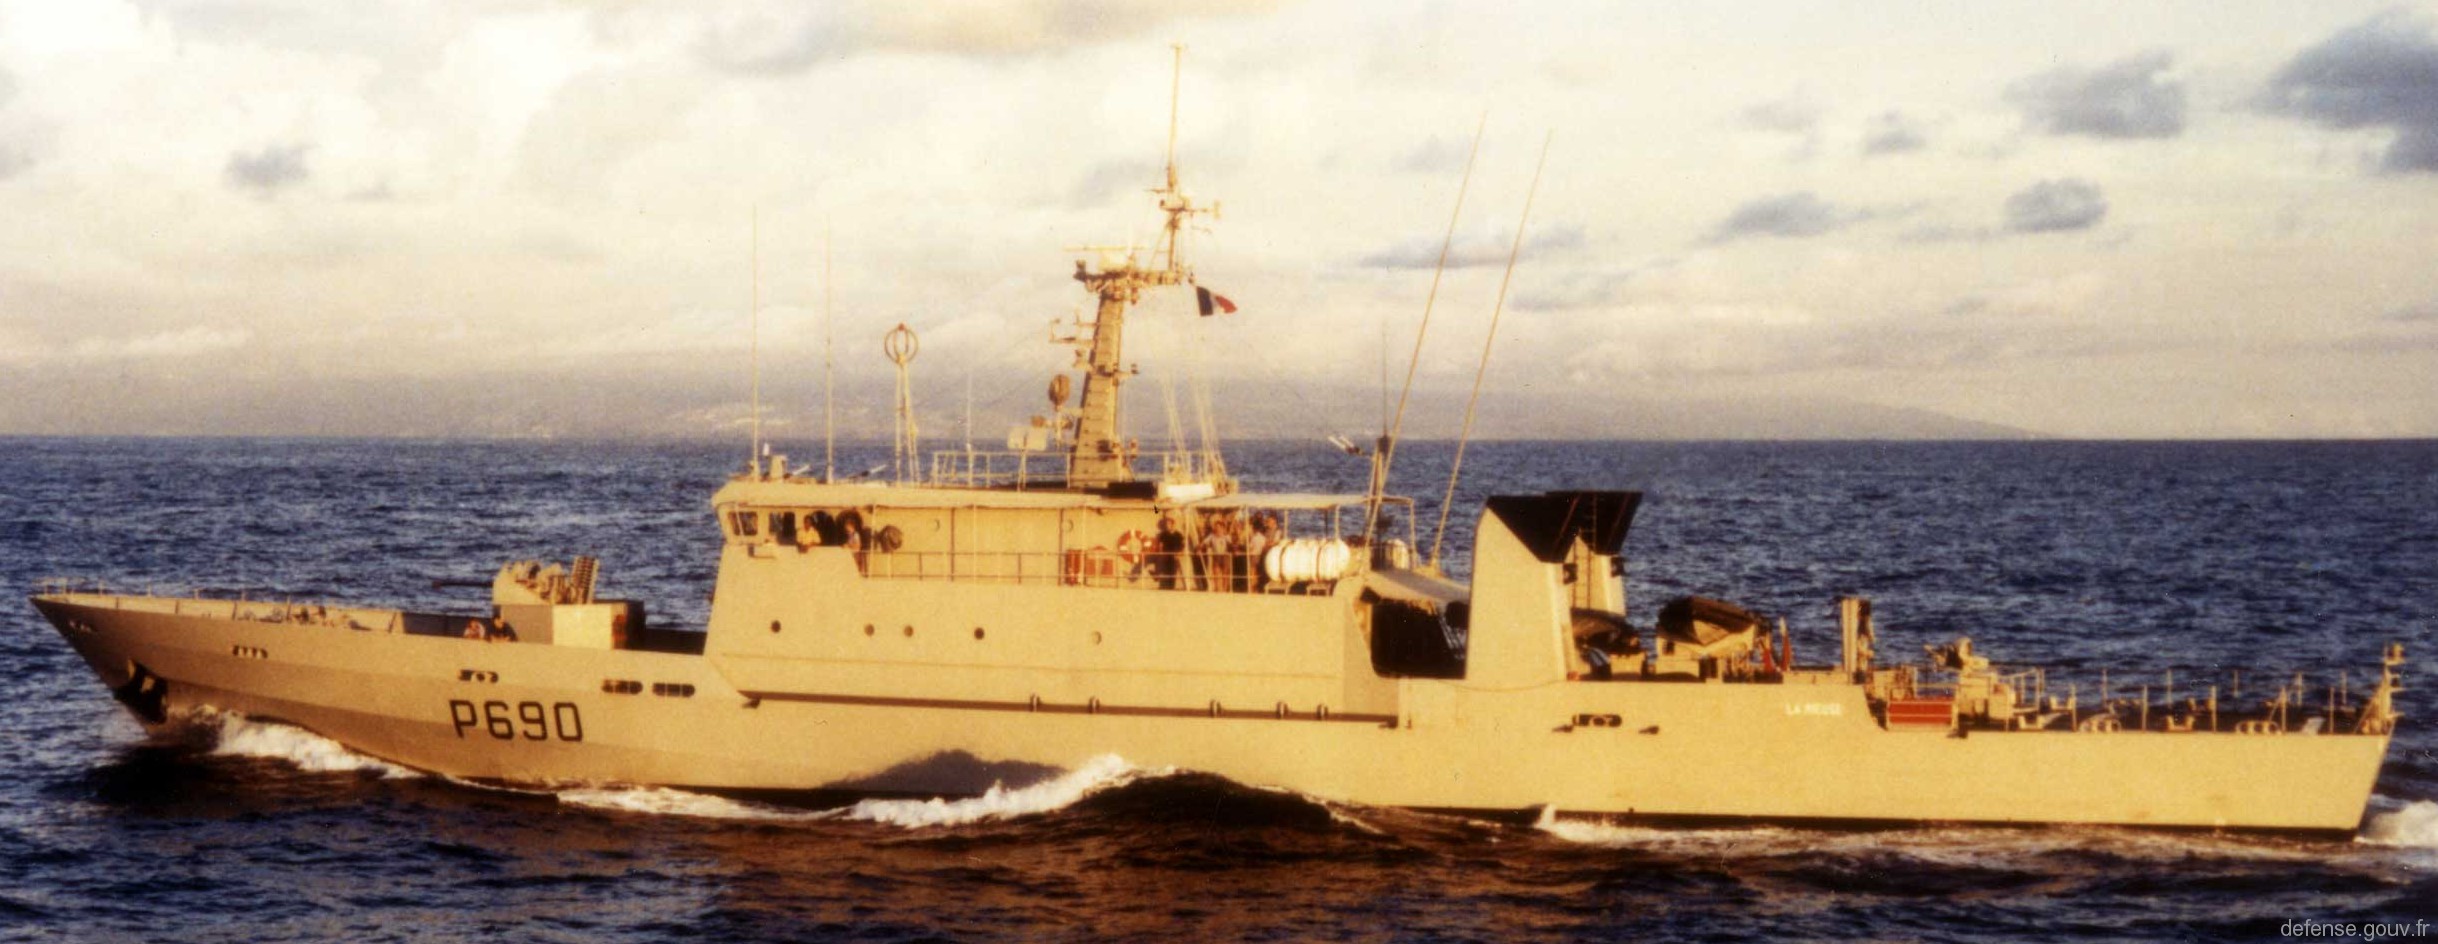 p-690 la rieuse l'audacieuse p400 class patrol vessel french navy patrouilleur marine nationale 03